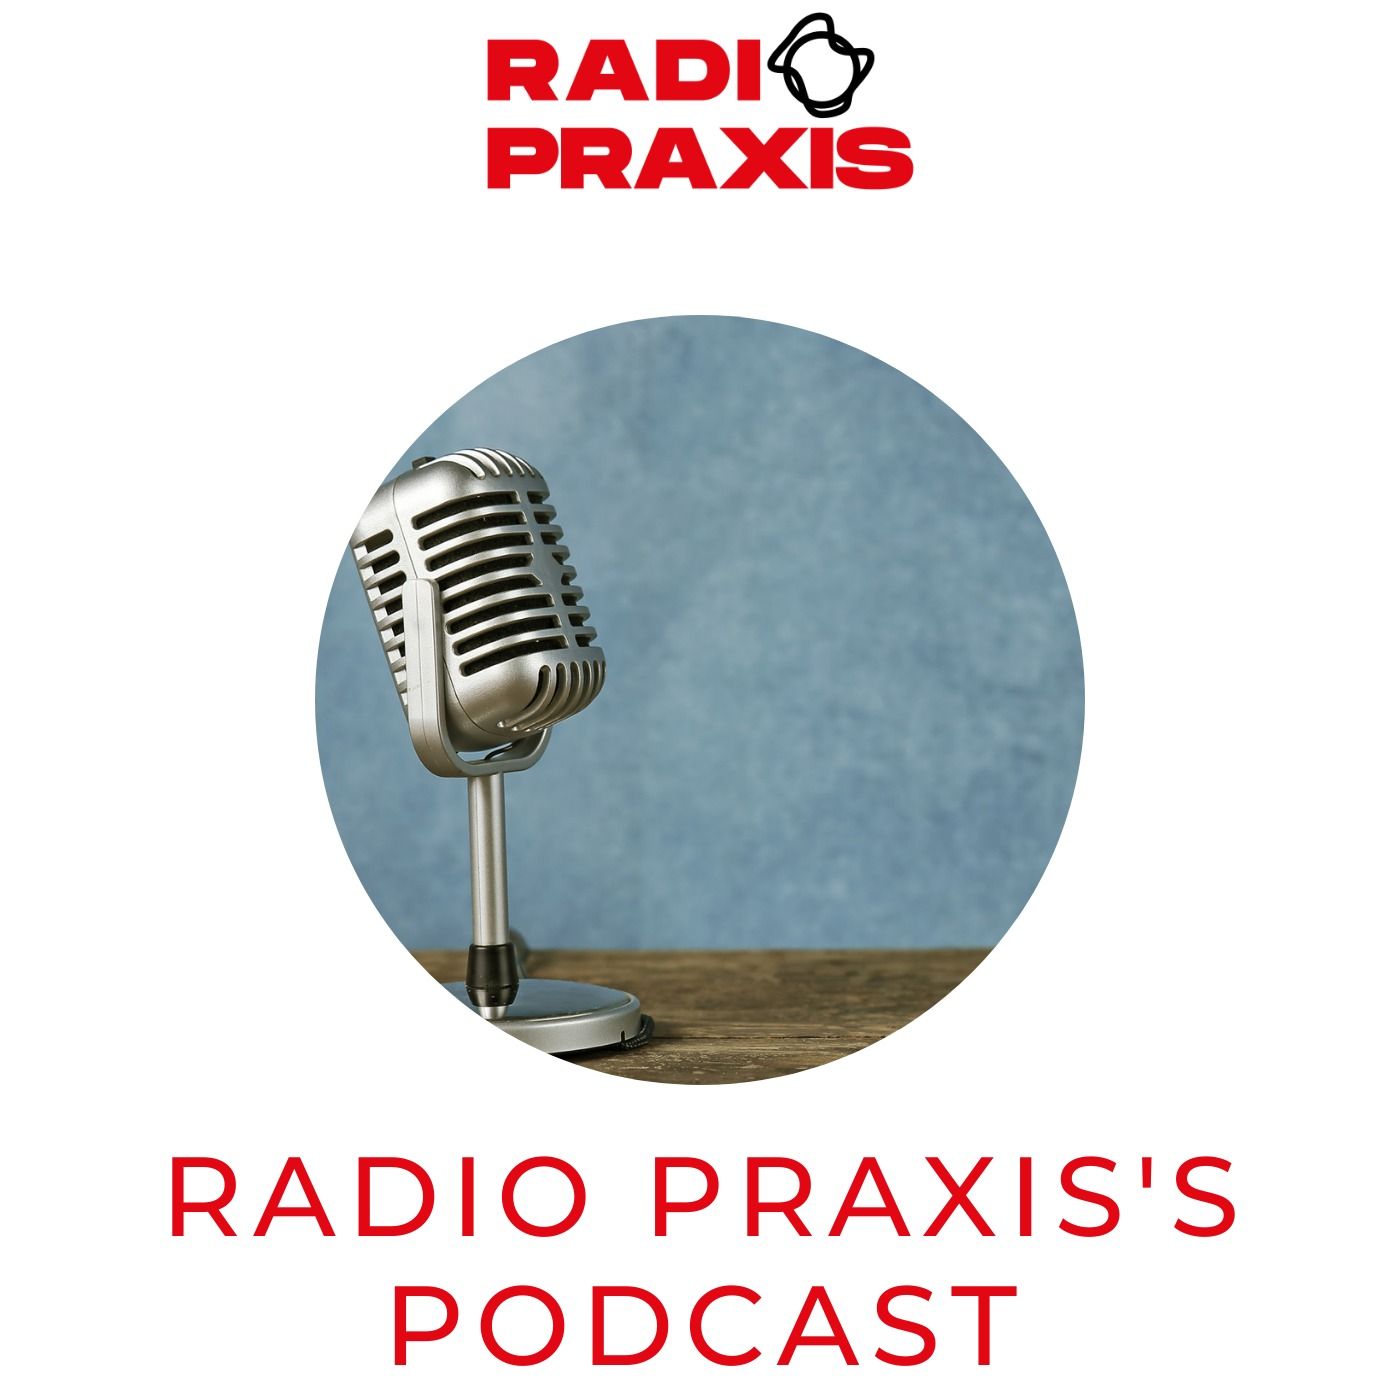 Gentleman vriendelijk druk Gedrag Radio Praxis' podcast